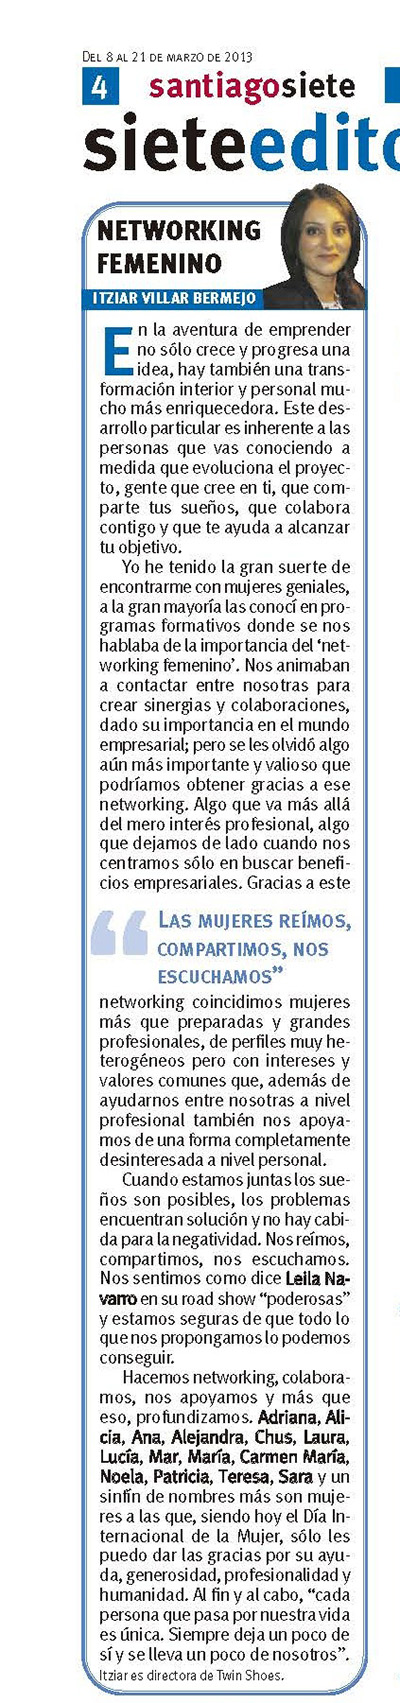 Networking femenino- Itziar Villar